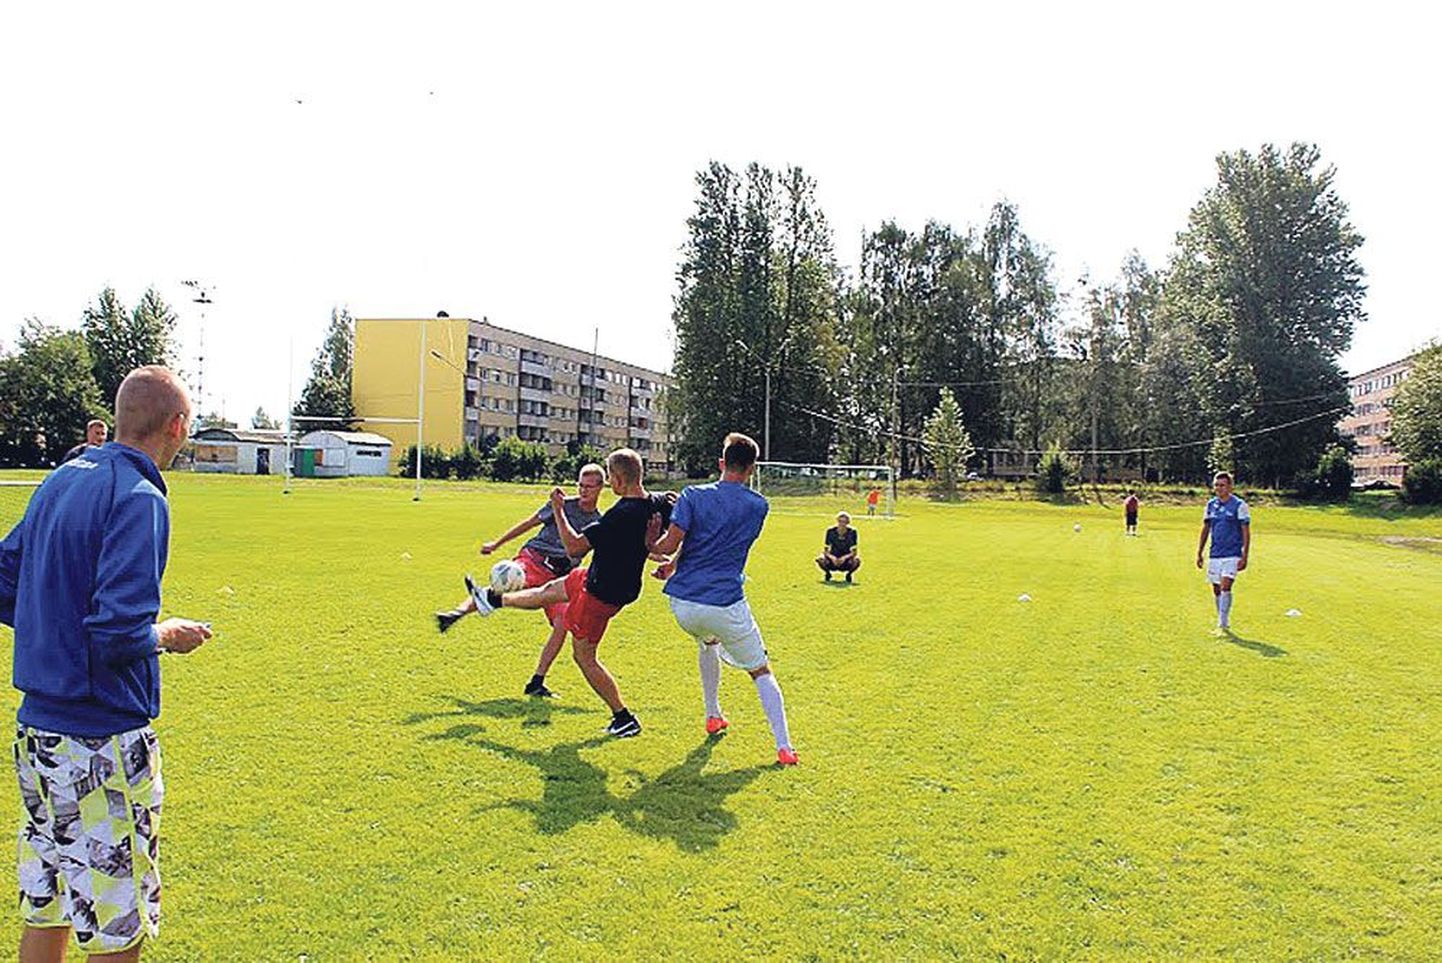 Laupäeval mängiti Tartus Sepa staadionil 15. hoovijalkaturniir (endise nimega Merkuur Cup) mänge.